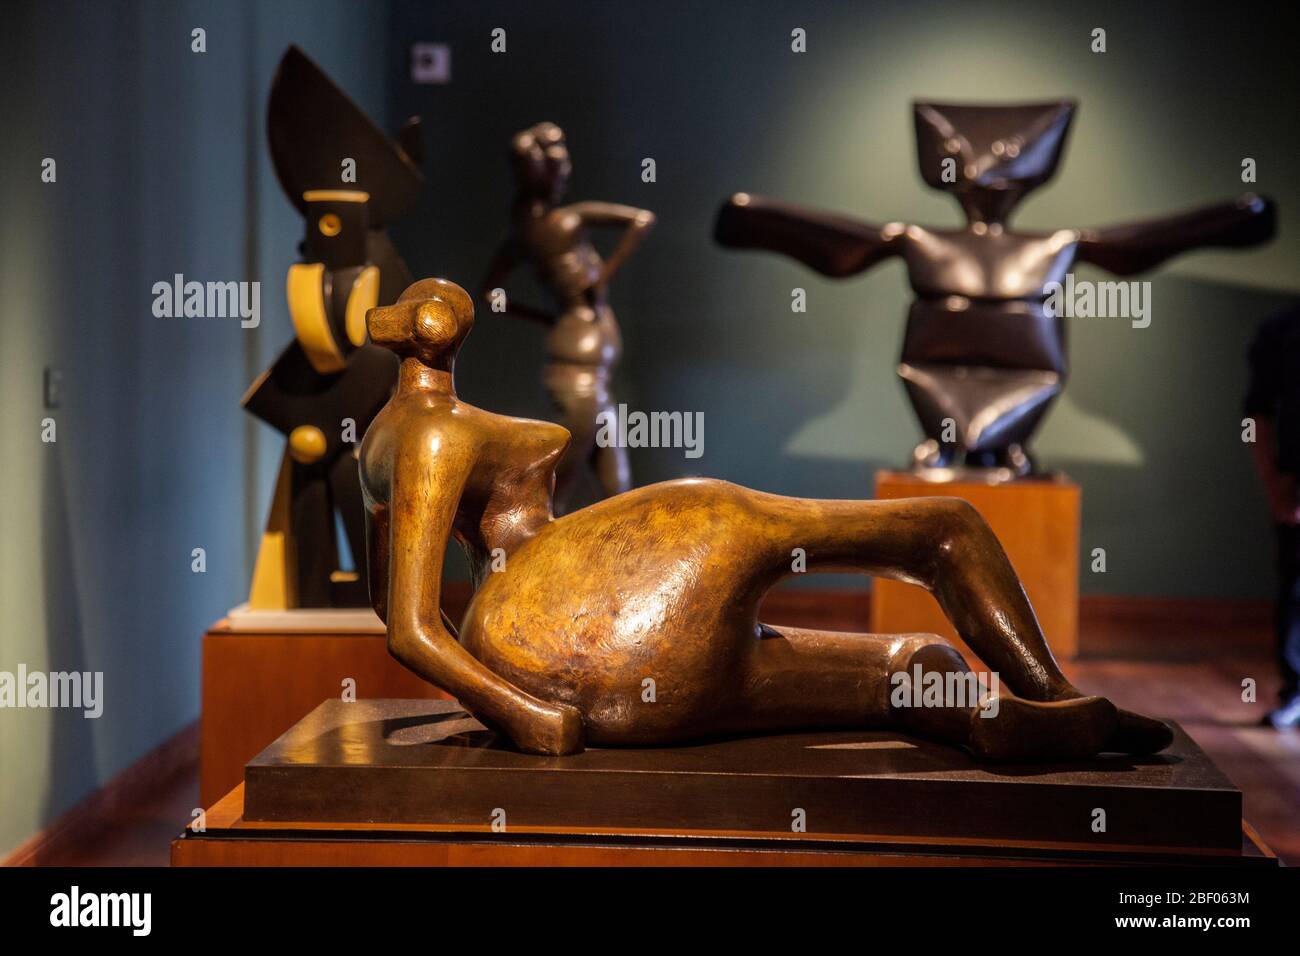 Figura reclinada no 7, Figura de reclamación no 7, bronce de Henry Moore en el Museo Botero también conocido como Museo Botero, Bogotá, Colombia, Sudamérica. Foto de stock